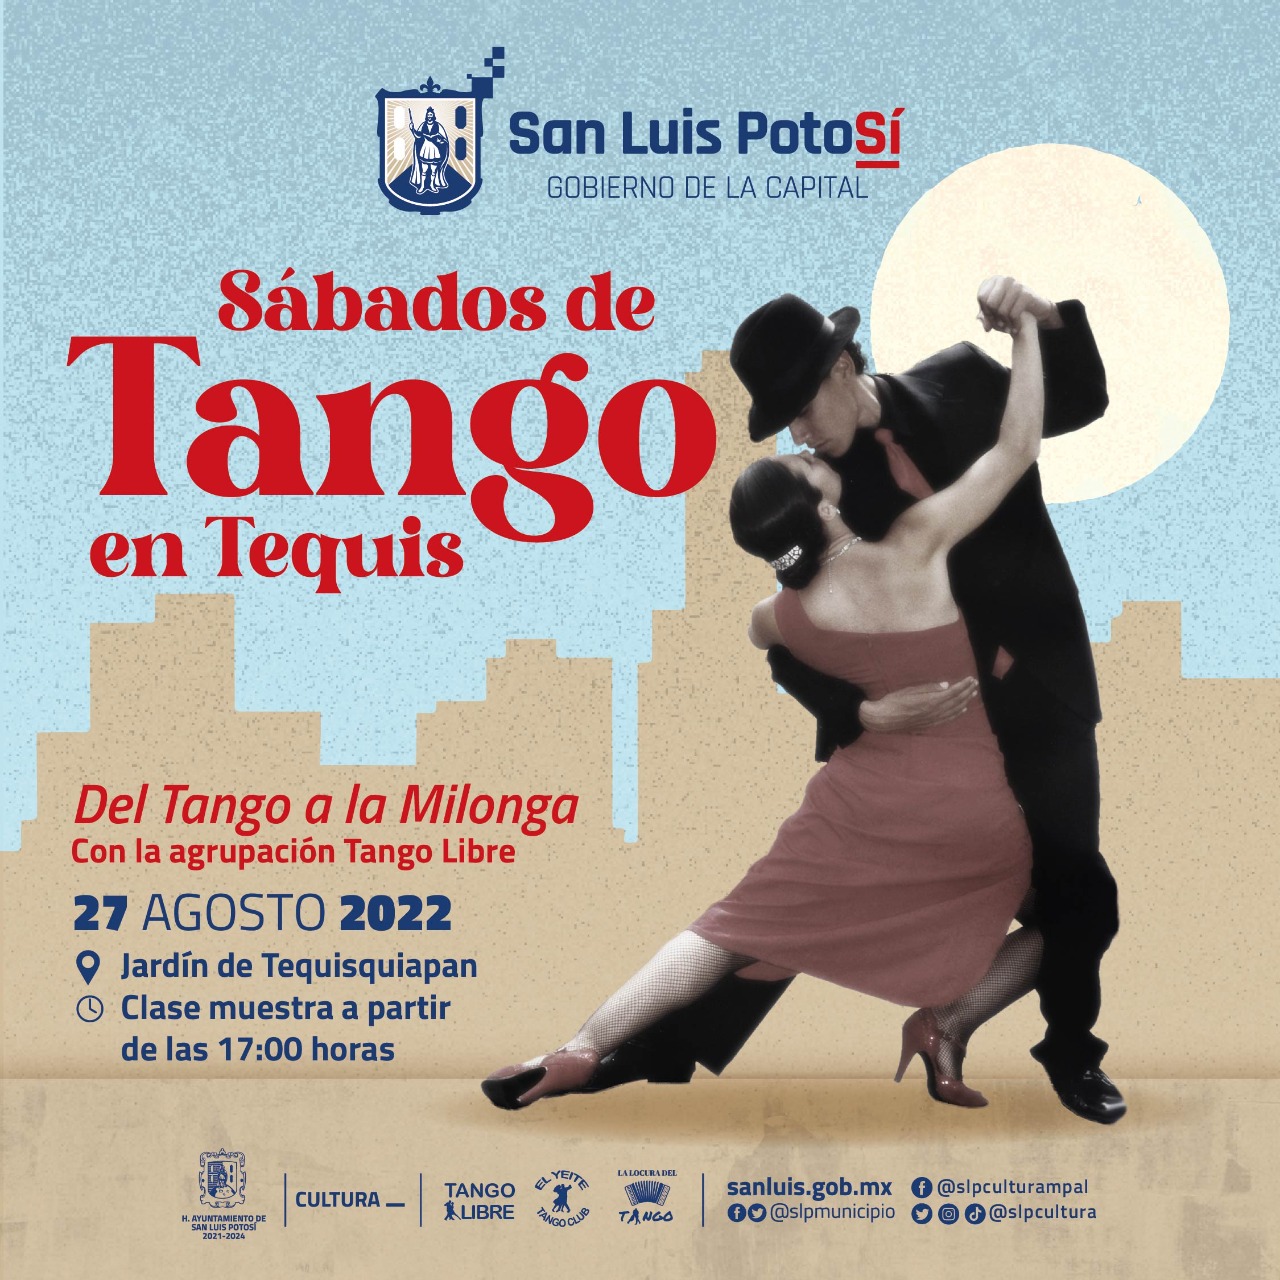 Cada sábado se realizará “Del Tango a la Milonga” en el Jardín de Tequisquiapan a partir de las 5 de la tarde.